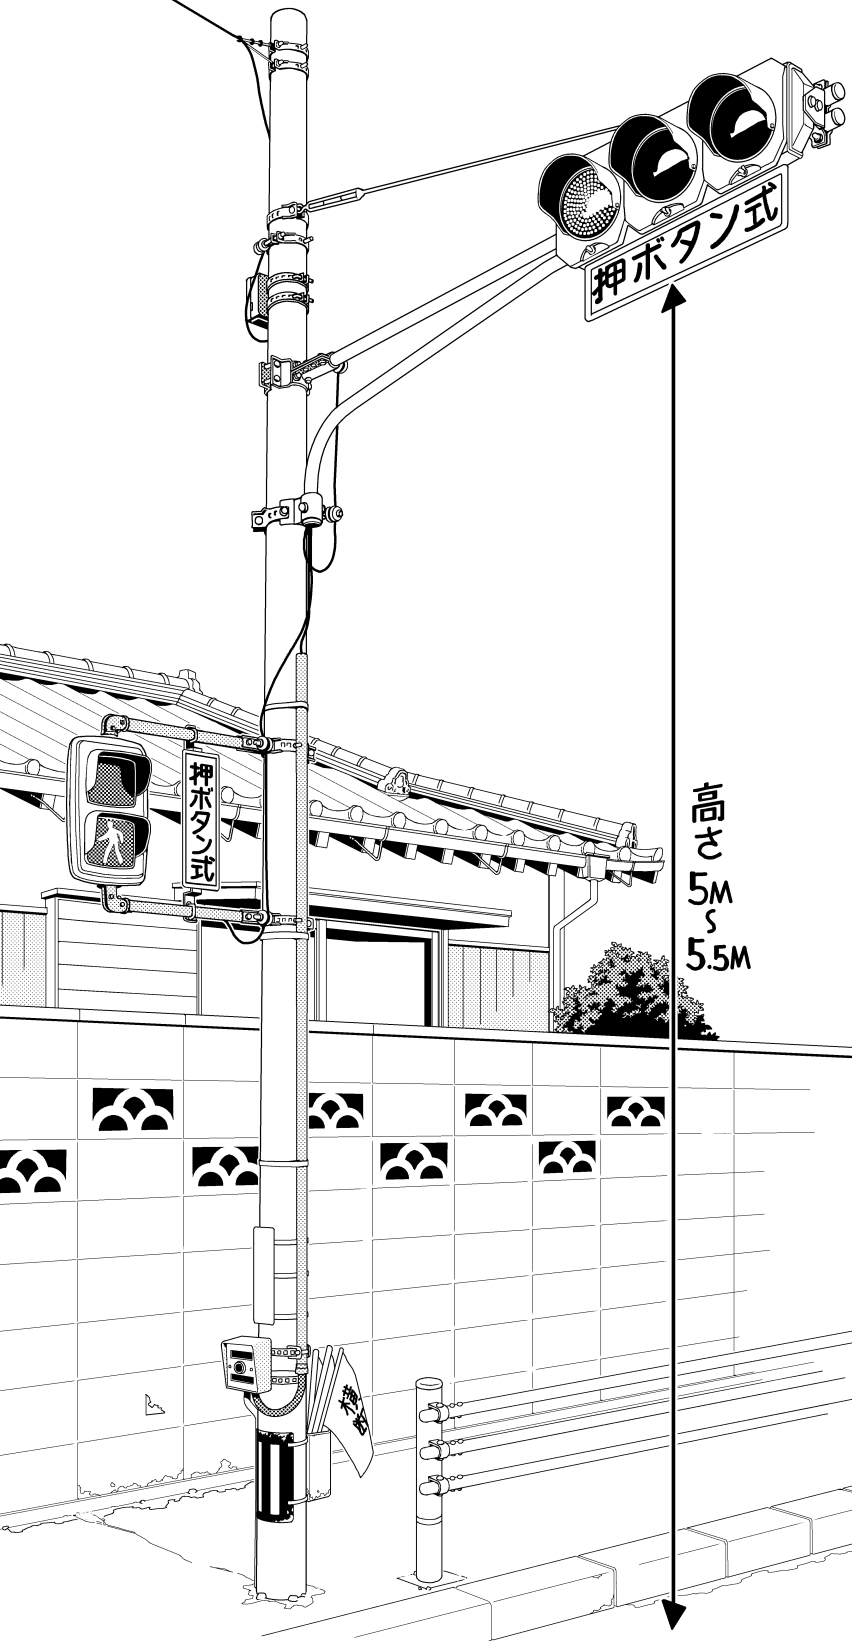 超級 背景講座 Maedaxの背景萌え 信号機編 イラスト マンガ描き方ナビ